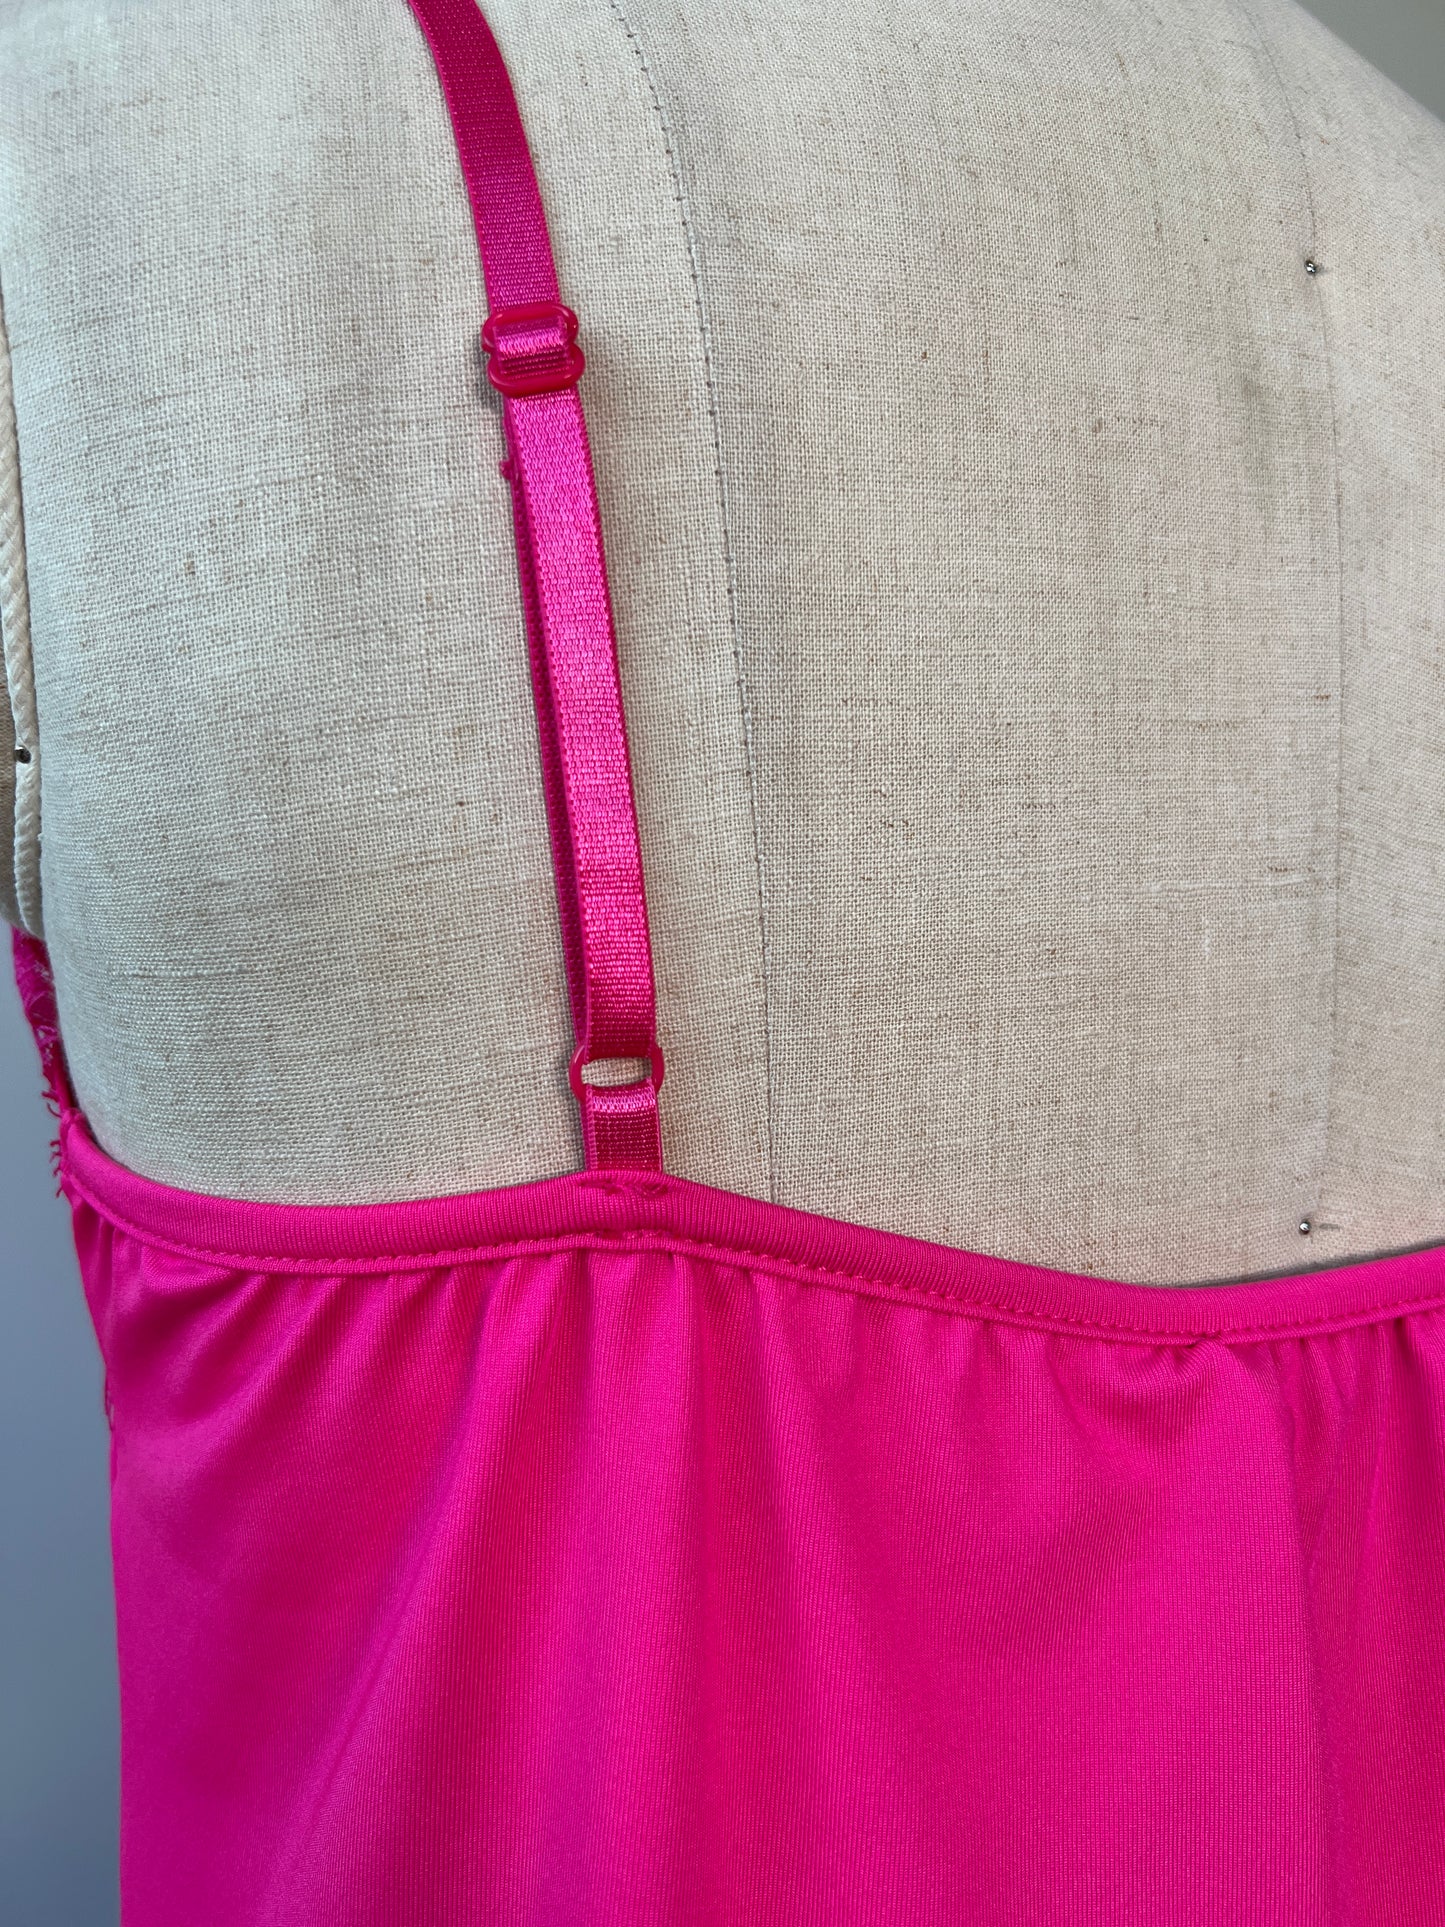 Camisole rose à finitions de dentelles assorties (plusieurs couleurs!)